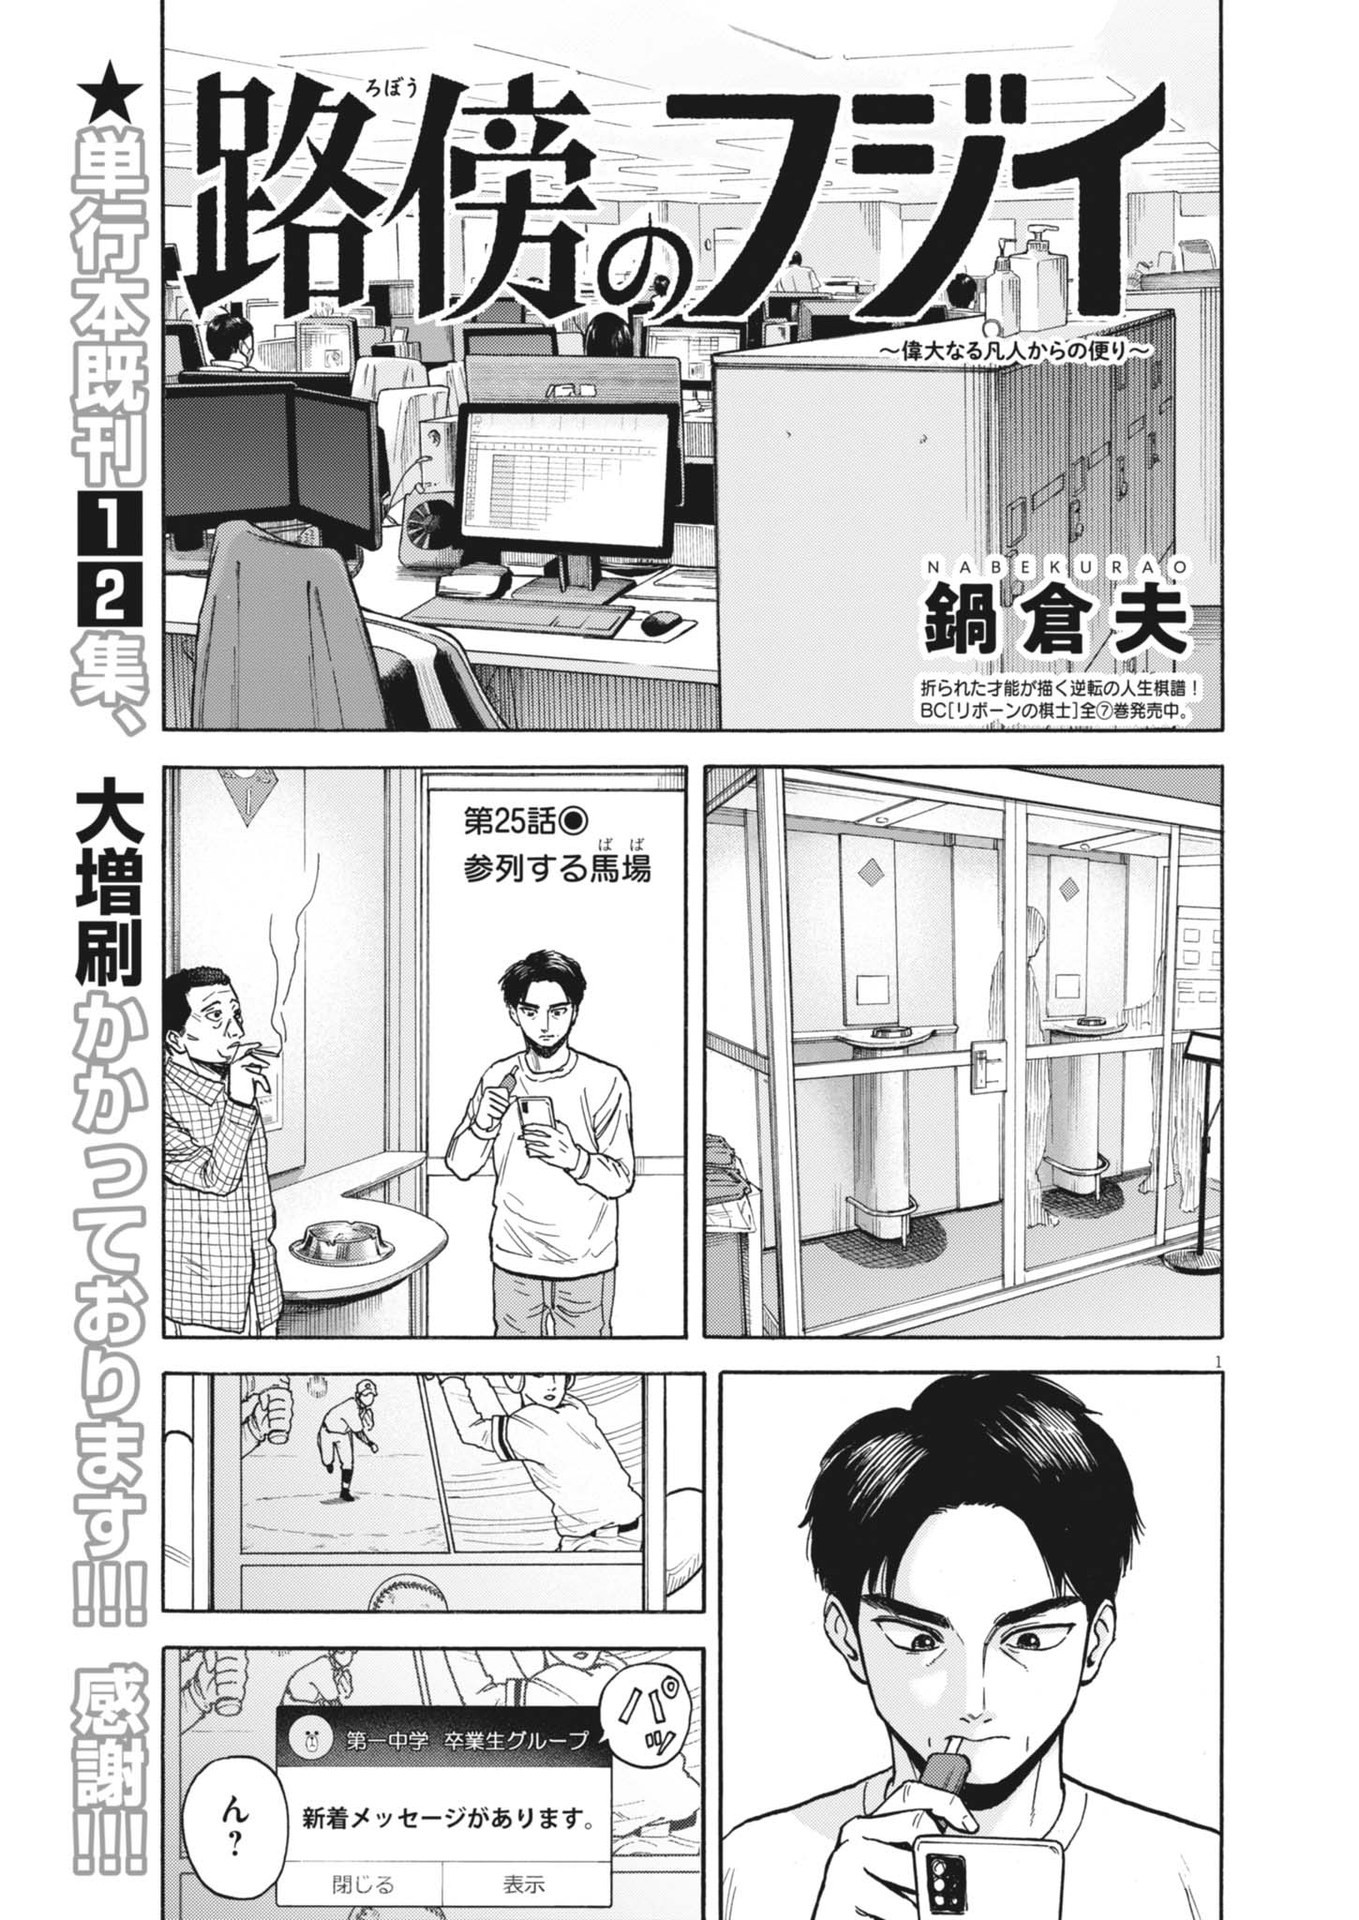 Robou no Fujii – Idai Naru Bonjin kara no Tayori - Chapter 25 - Page 1